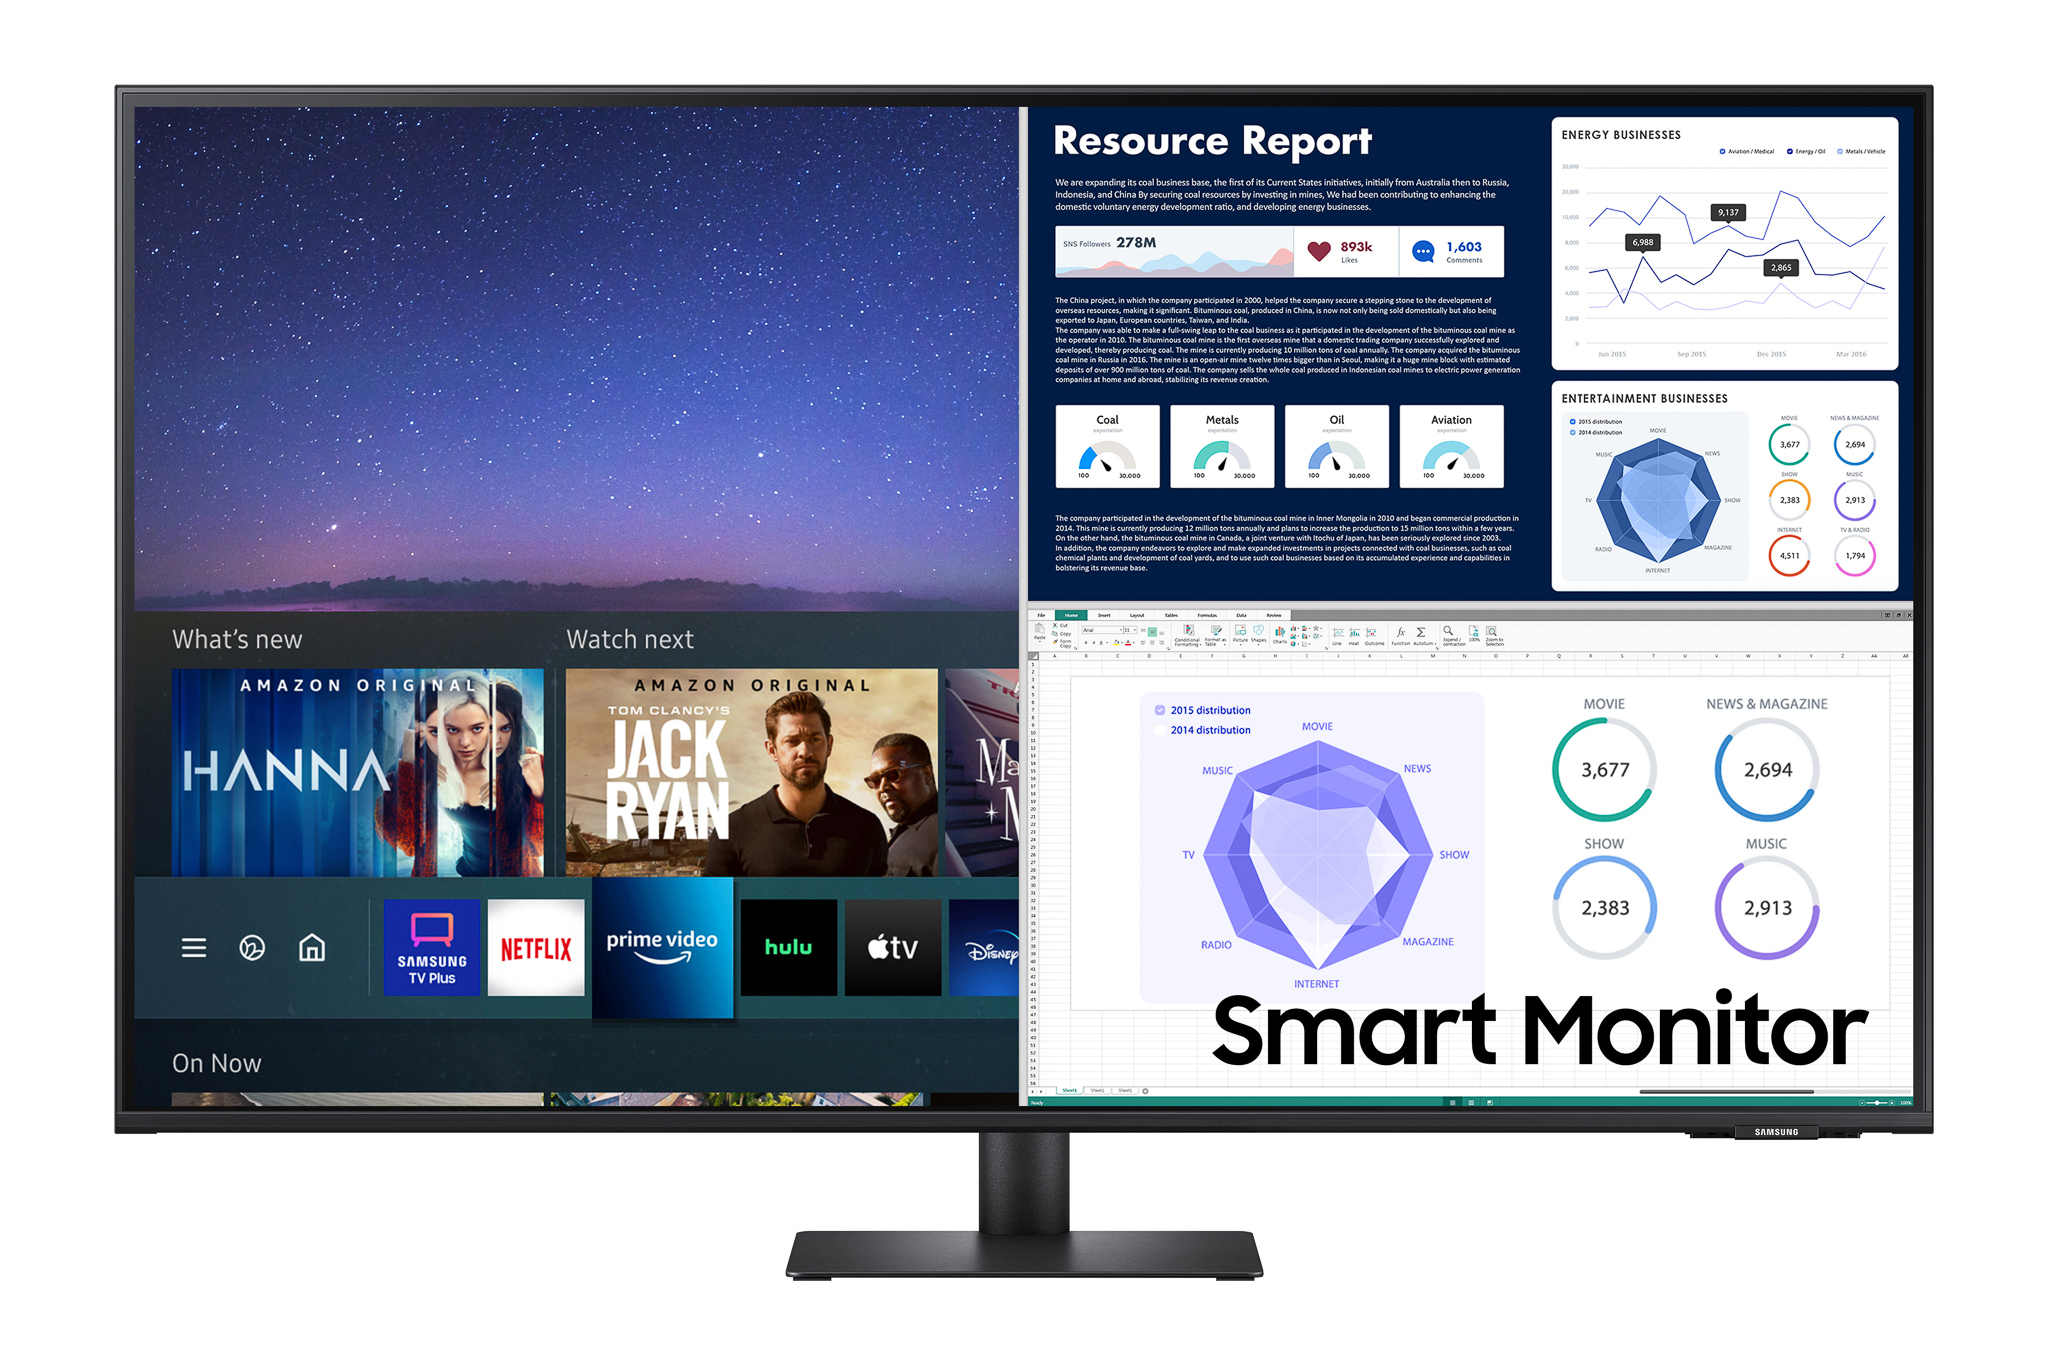 Samsung mở rộng dòng Smart Monitor toàn cầu, đáp ứng nhu cầu mạnh mẽ về màn hình đa năng